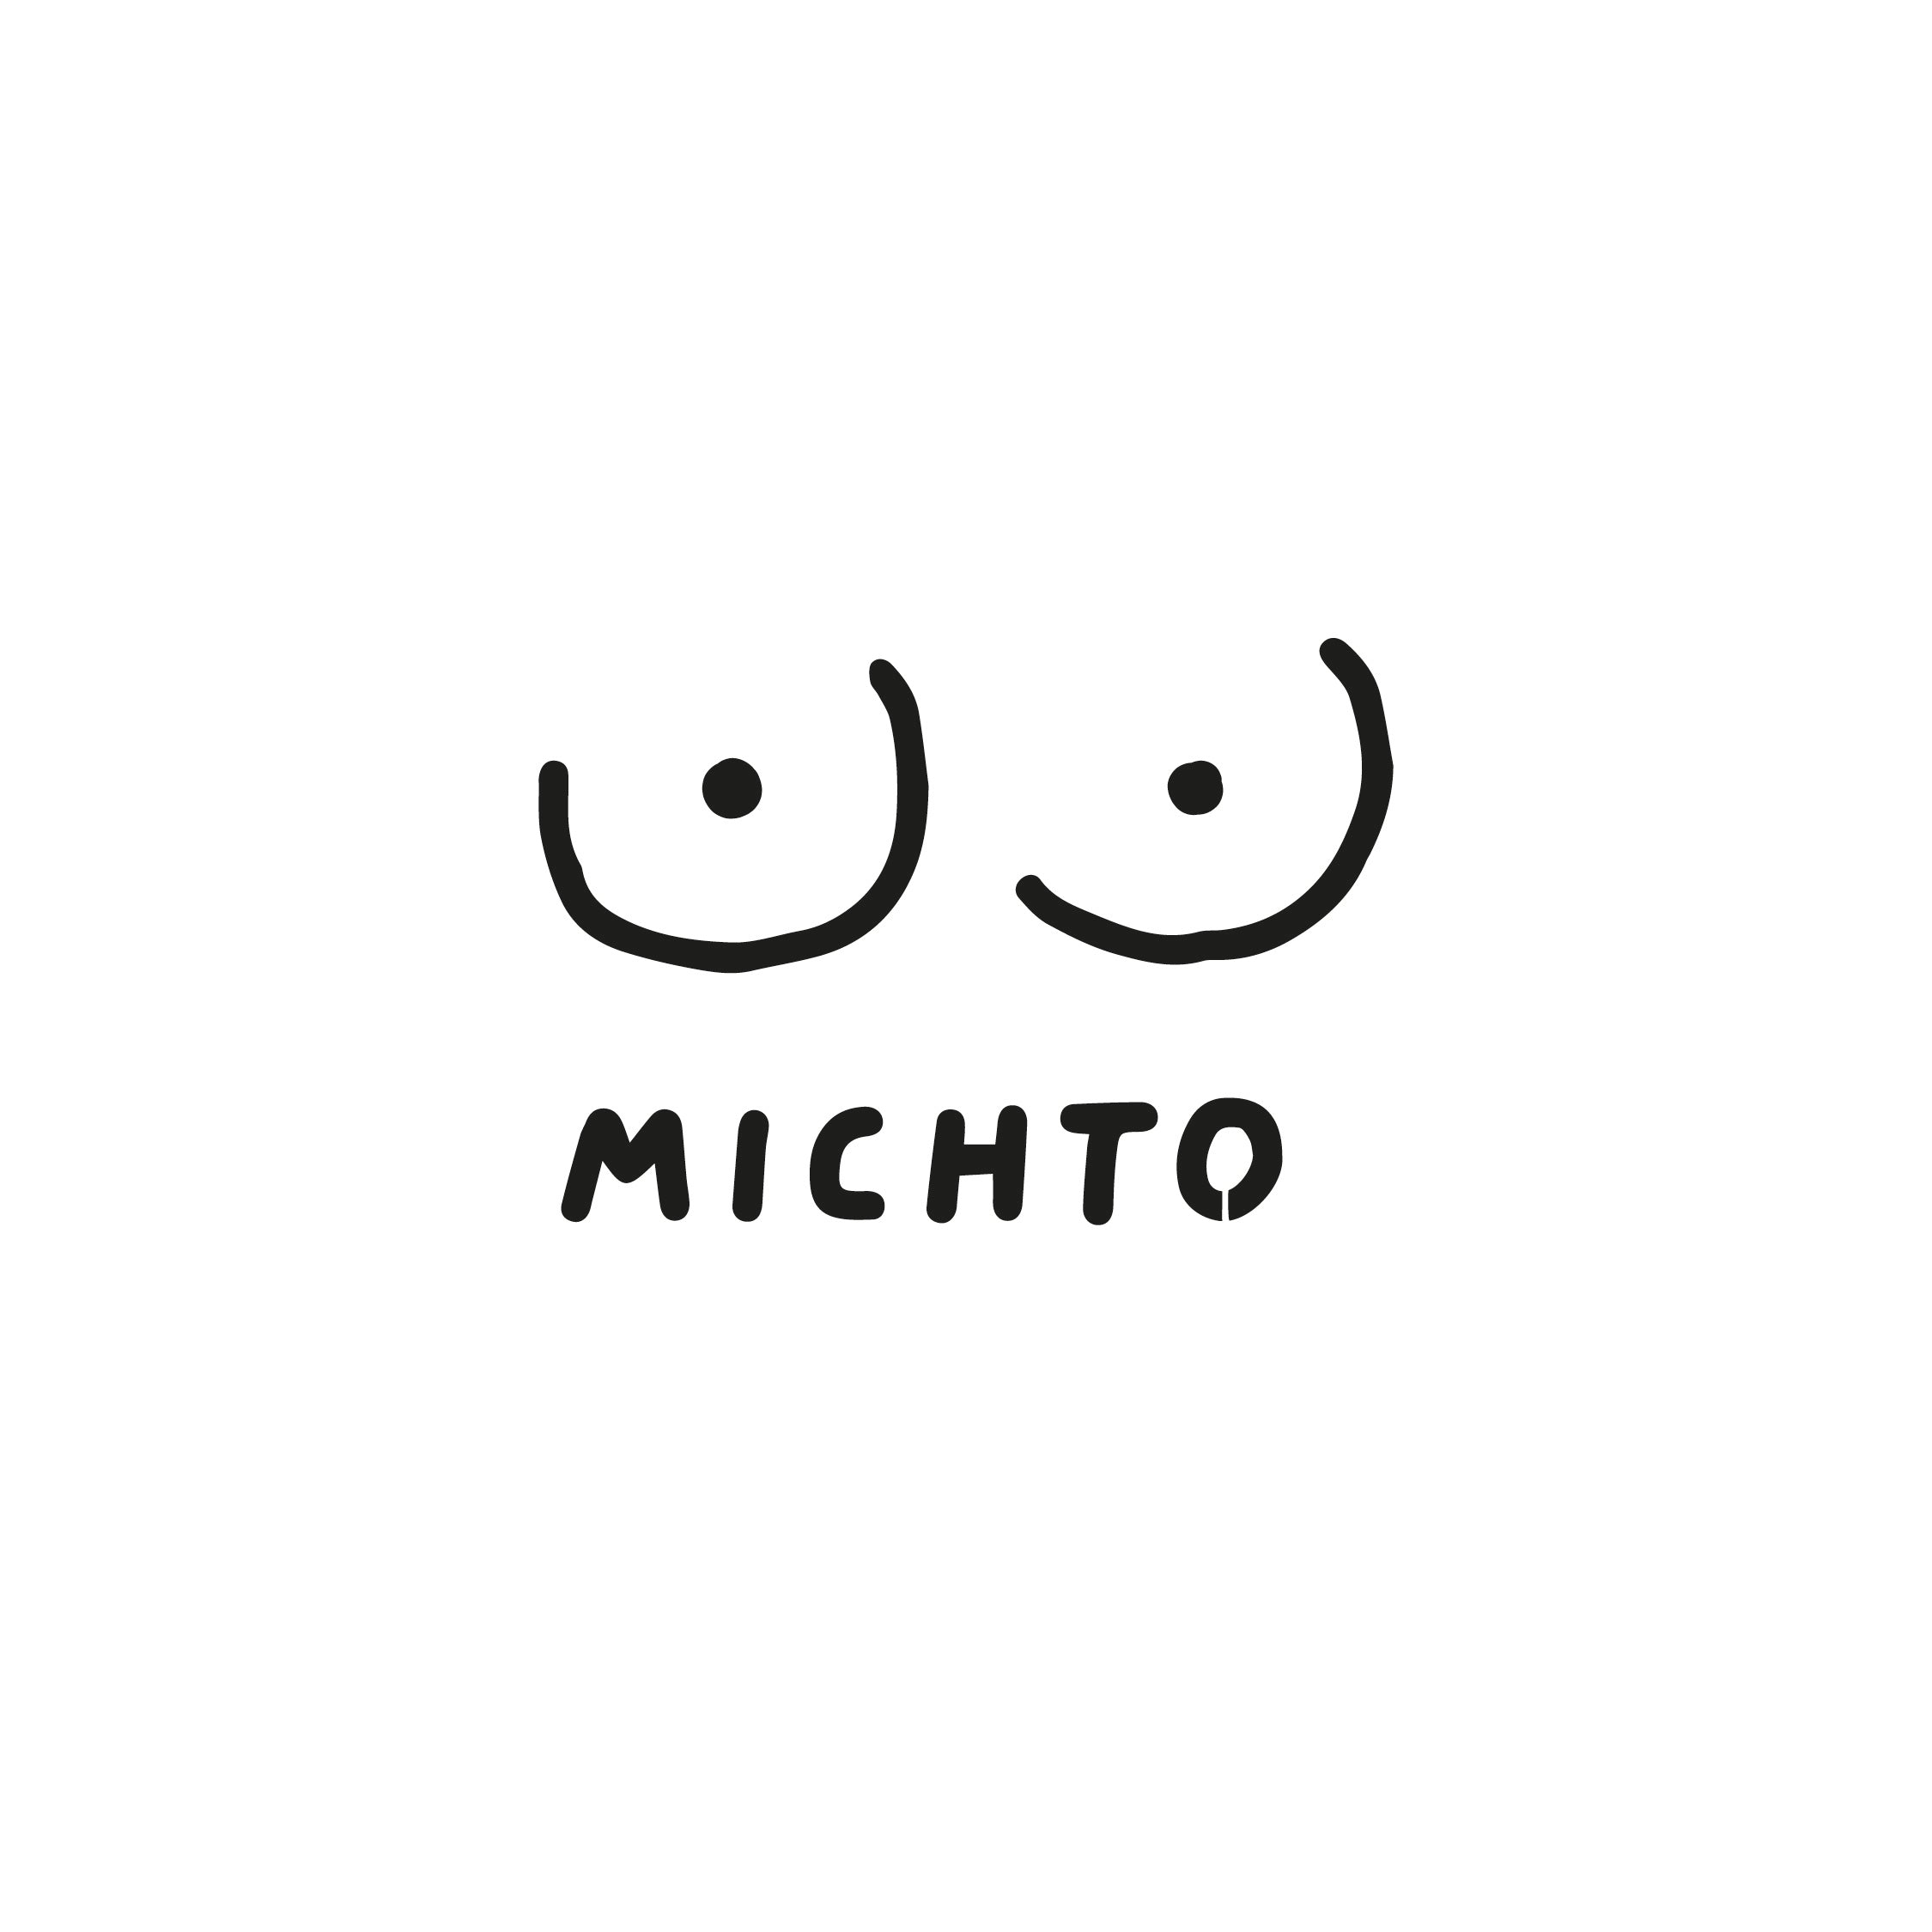 Michto